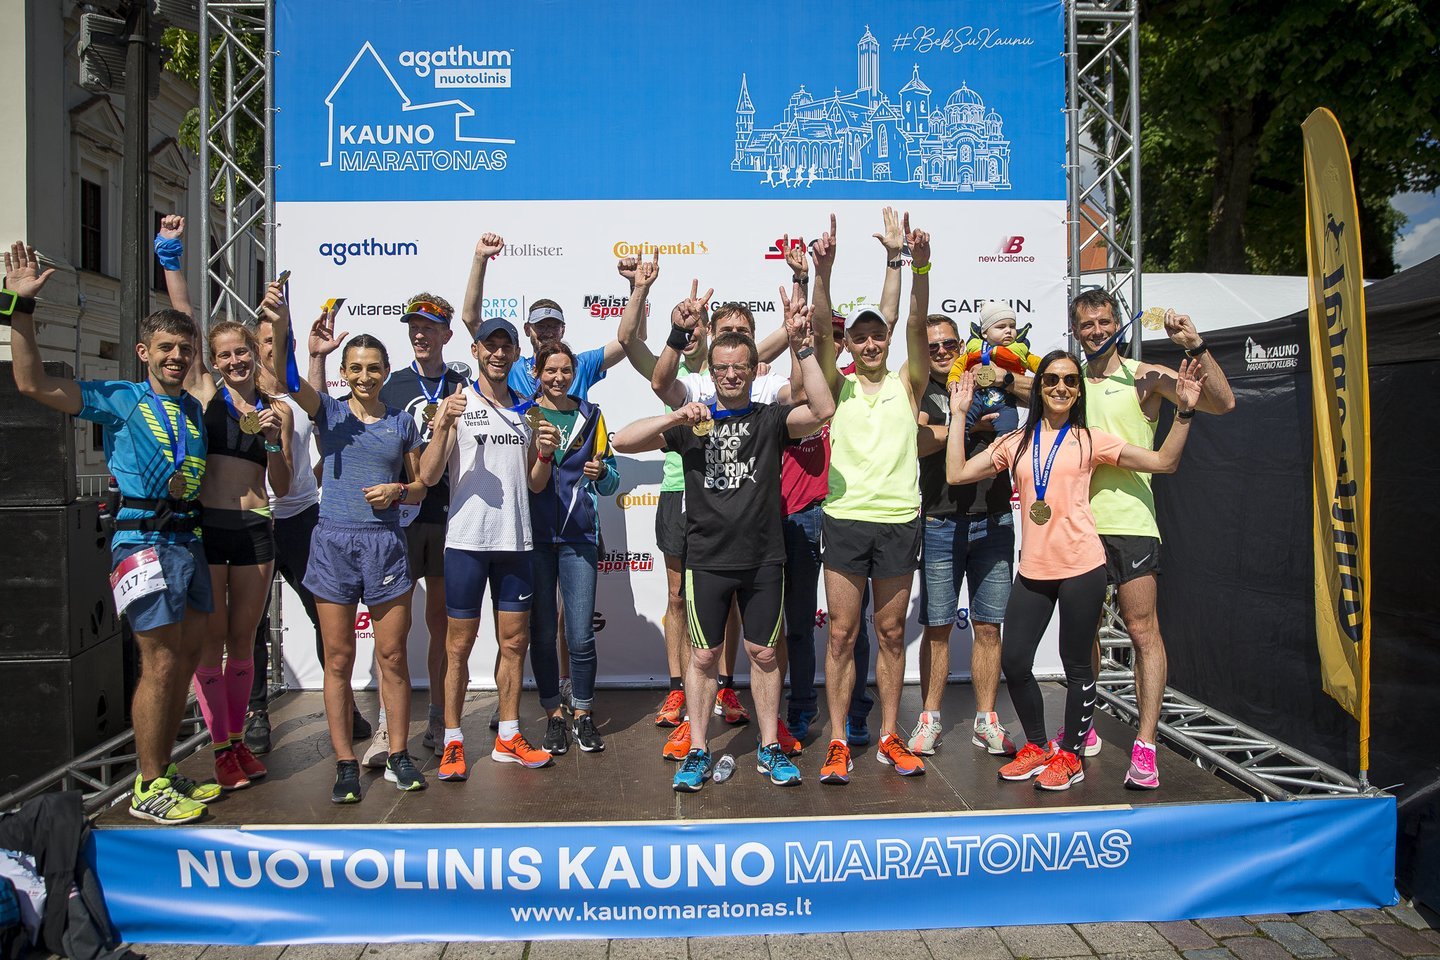  Kauno maratone sportininkai varžėsi nuotoliniu būdu.<br> R.Lukoševičiaus nuotr.